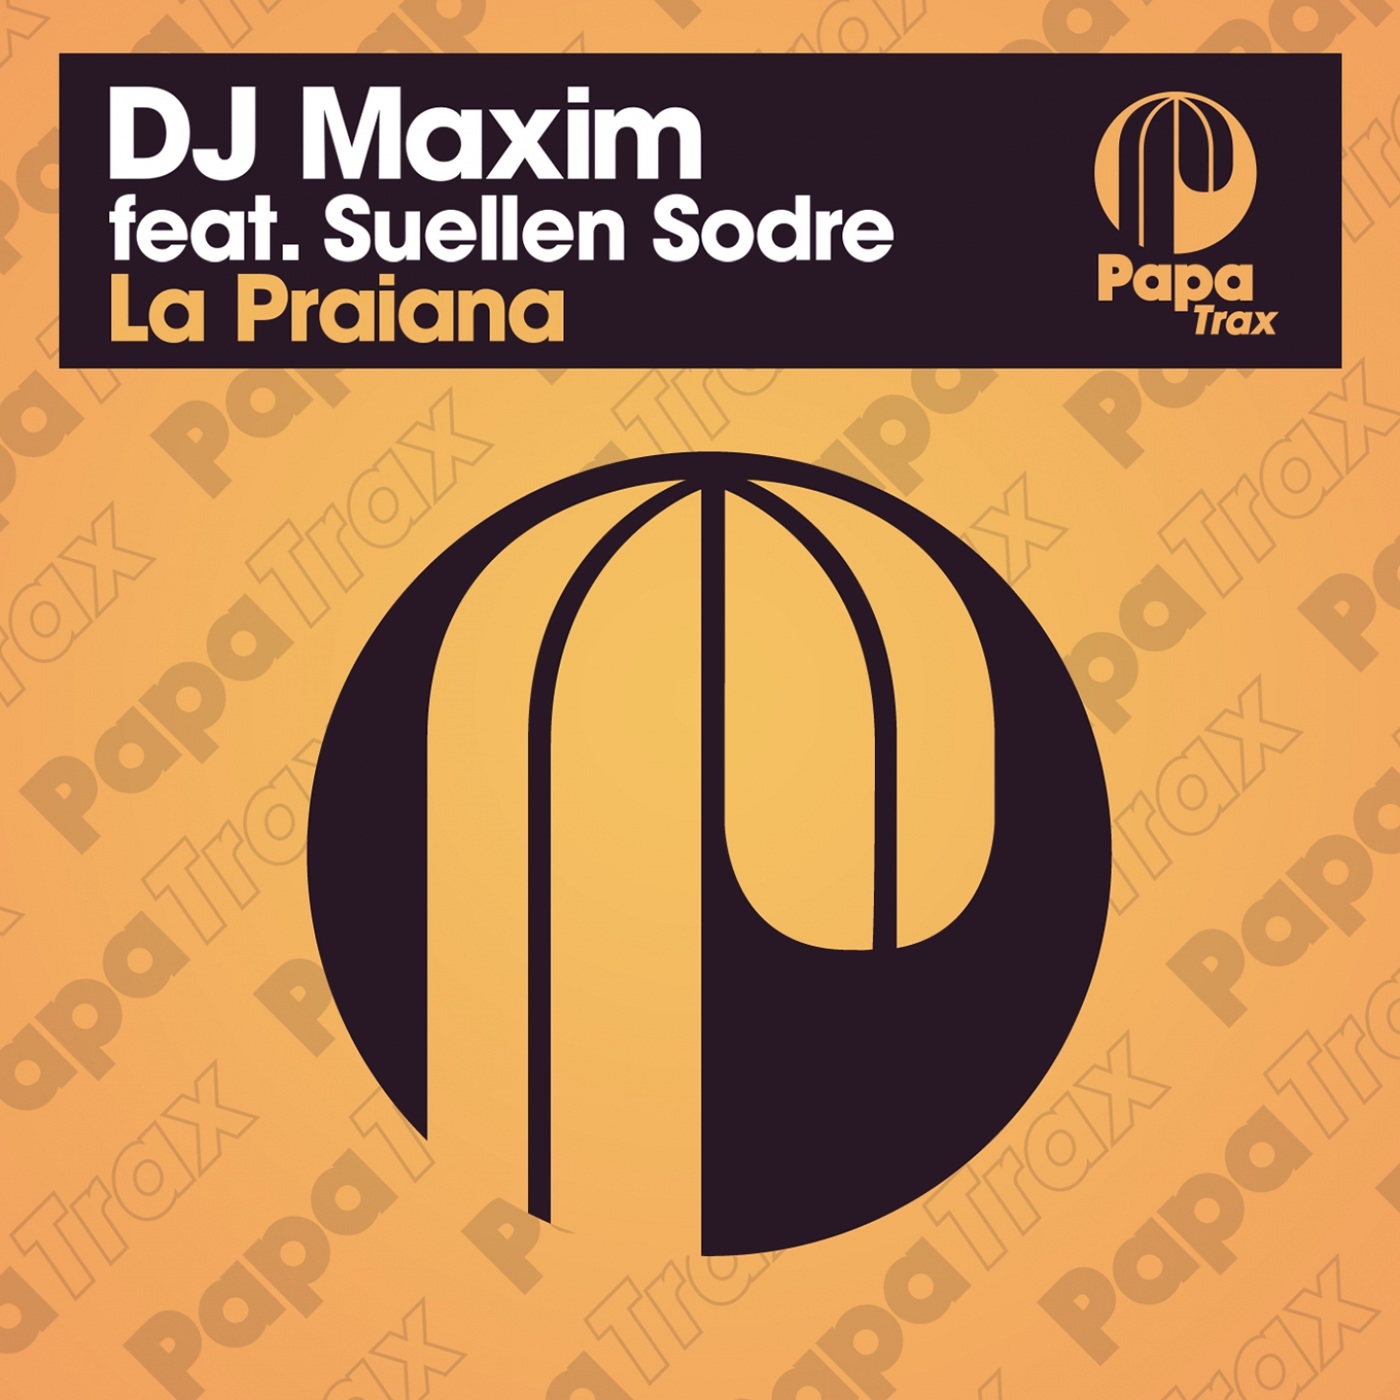 DJ Maxim - La Praiana / Papa Trax